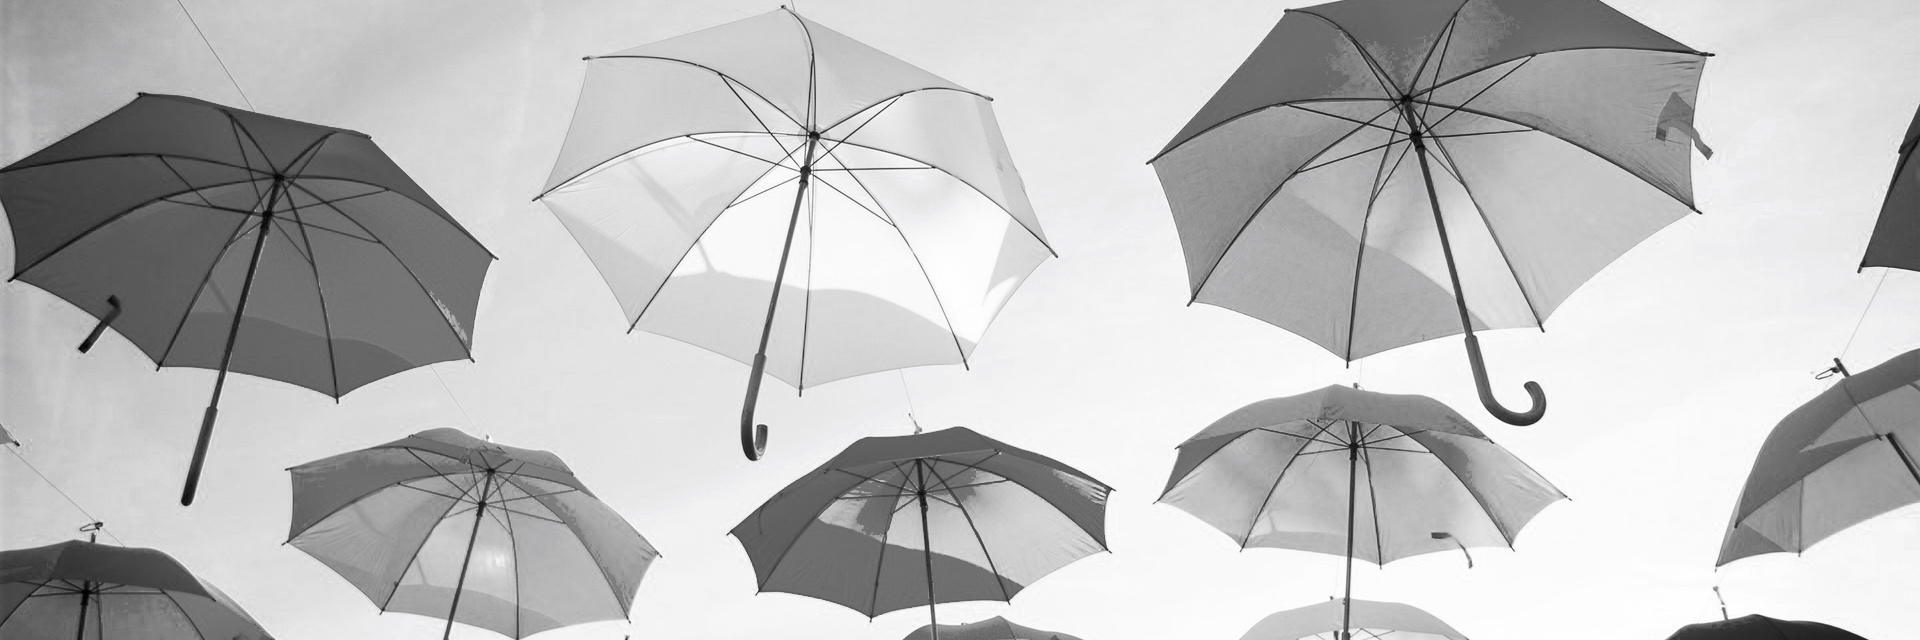 Fairsicherungsmaklerin/Versicherungen/Regenschirme